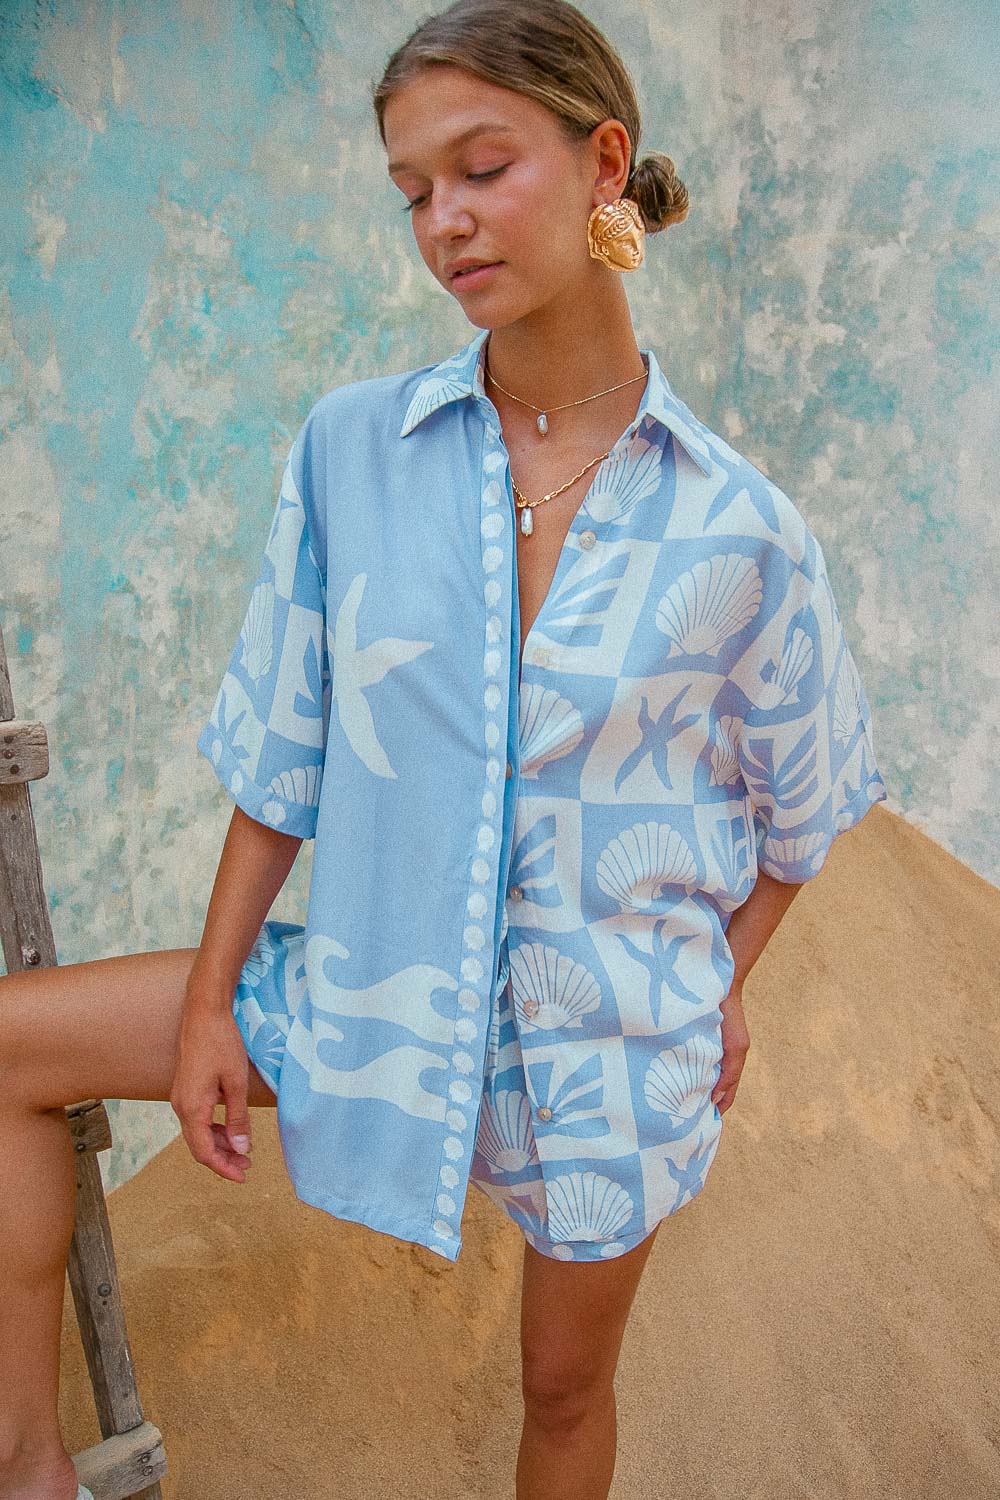 Port Villa ShirtPort Villa Shirt blue shell print blouse matching coord summer outfit set shorts set